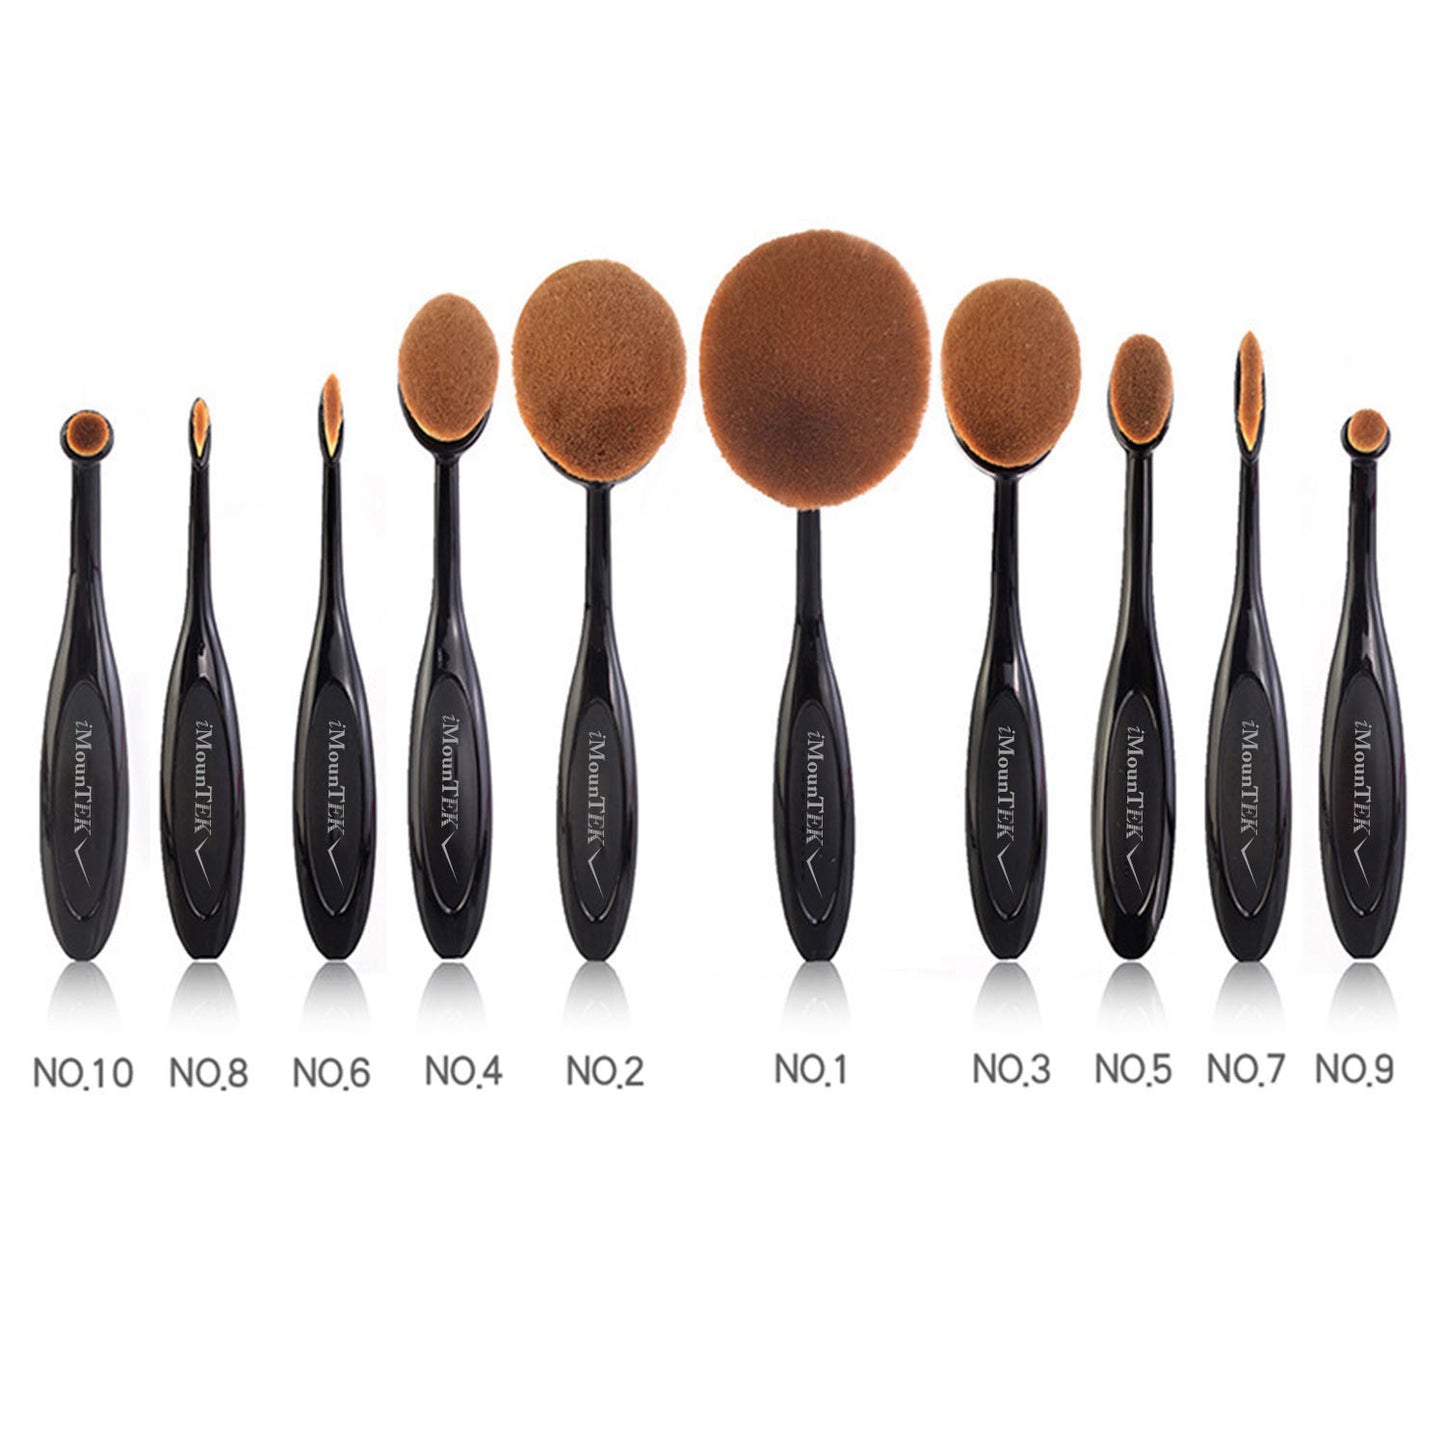 10-PCS Oval-Shaped Makeup Brush Set